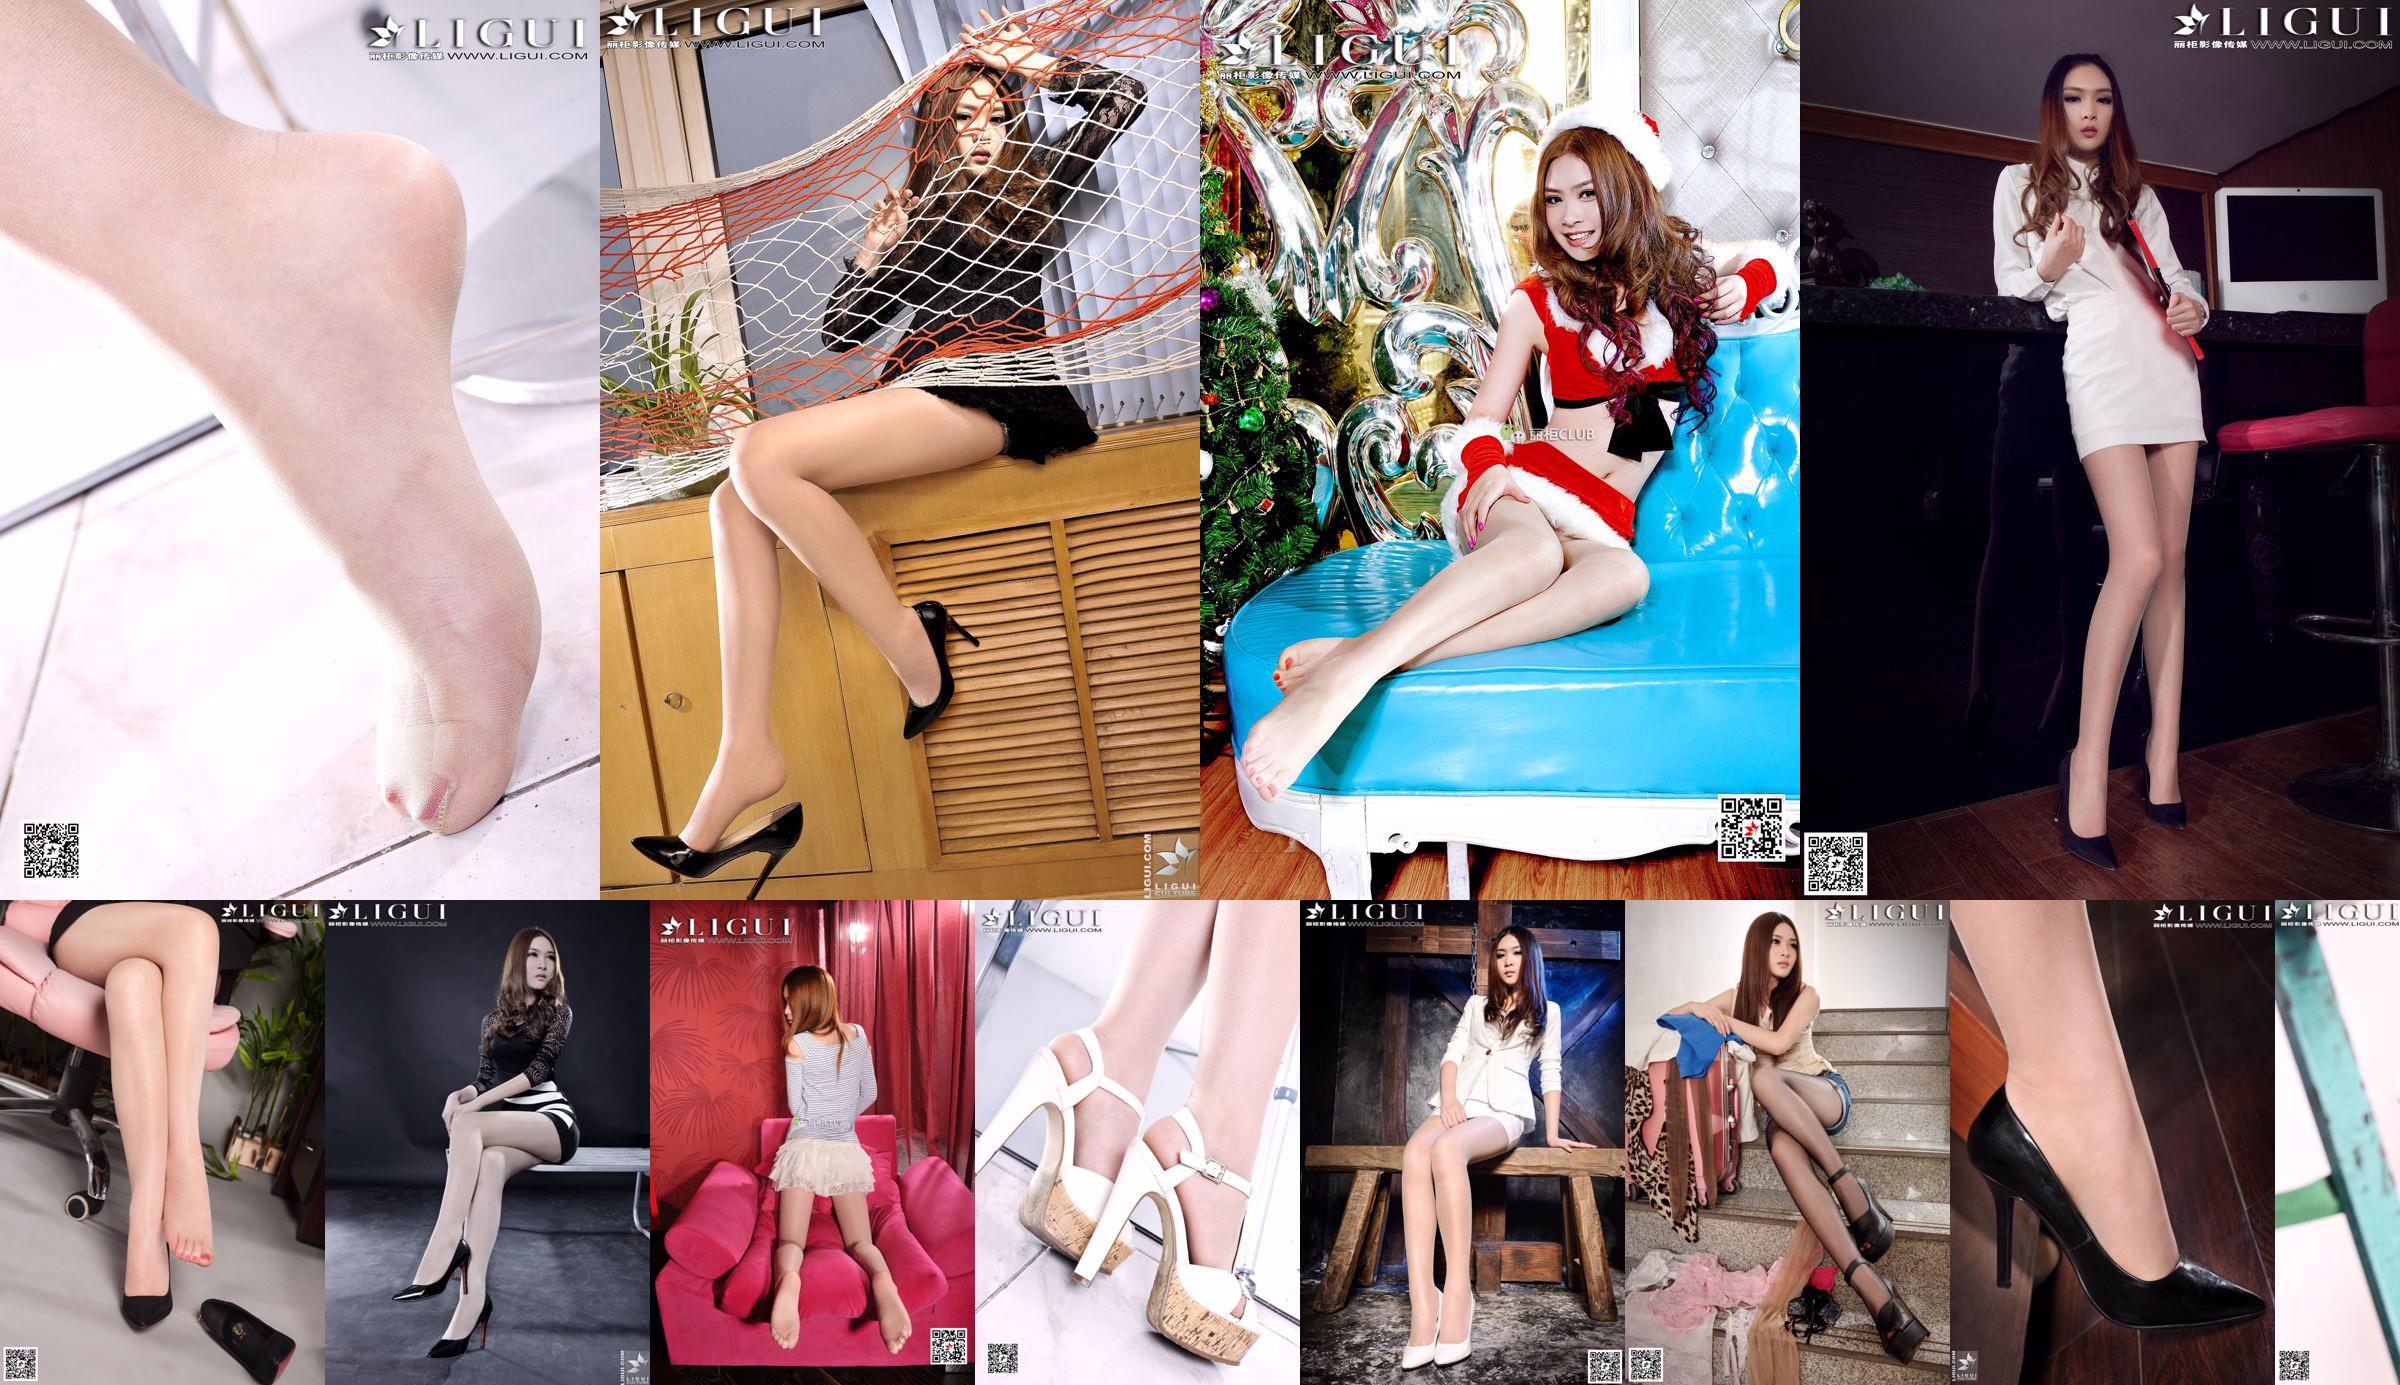 Modello Yoona "Dea del tacco alto in pizzo bianco" [LiGui] Belle gambe e foto di piedi di seta No.8efd53 Pagina 1